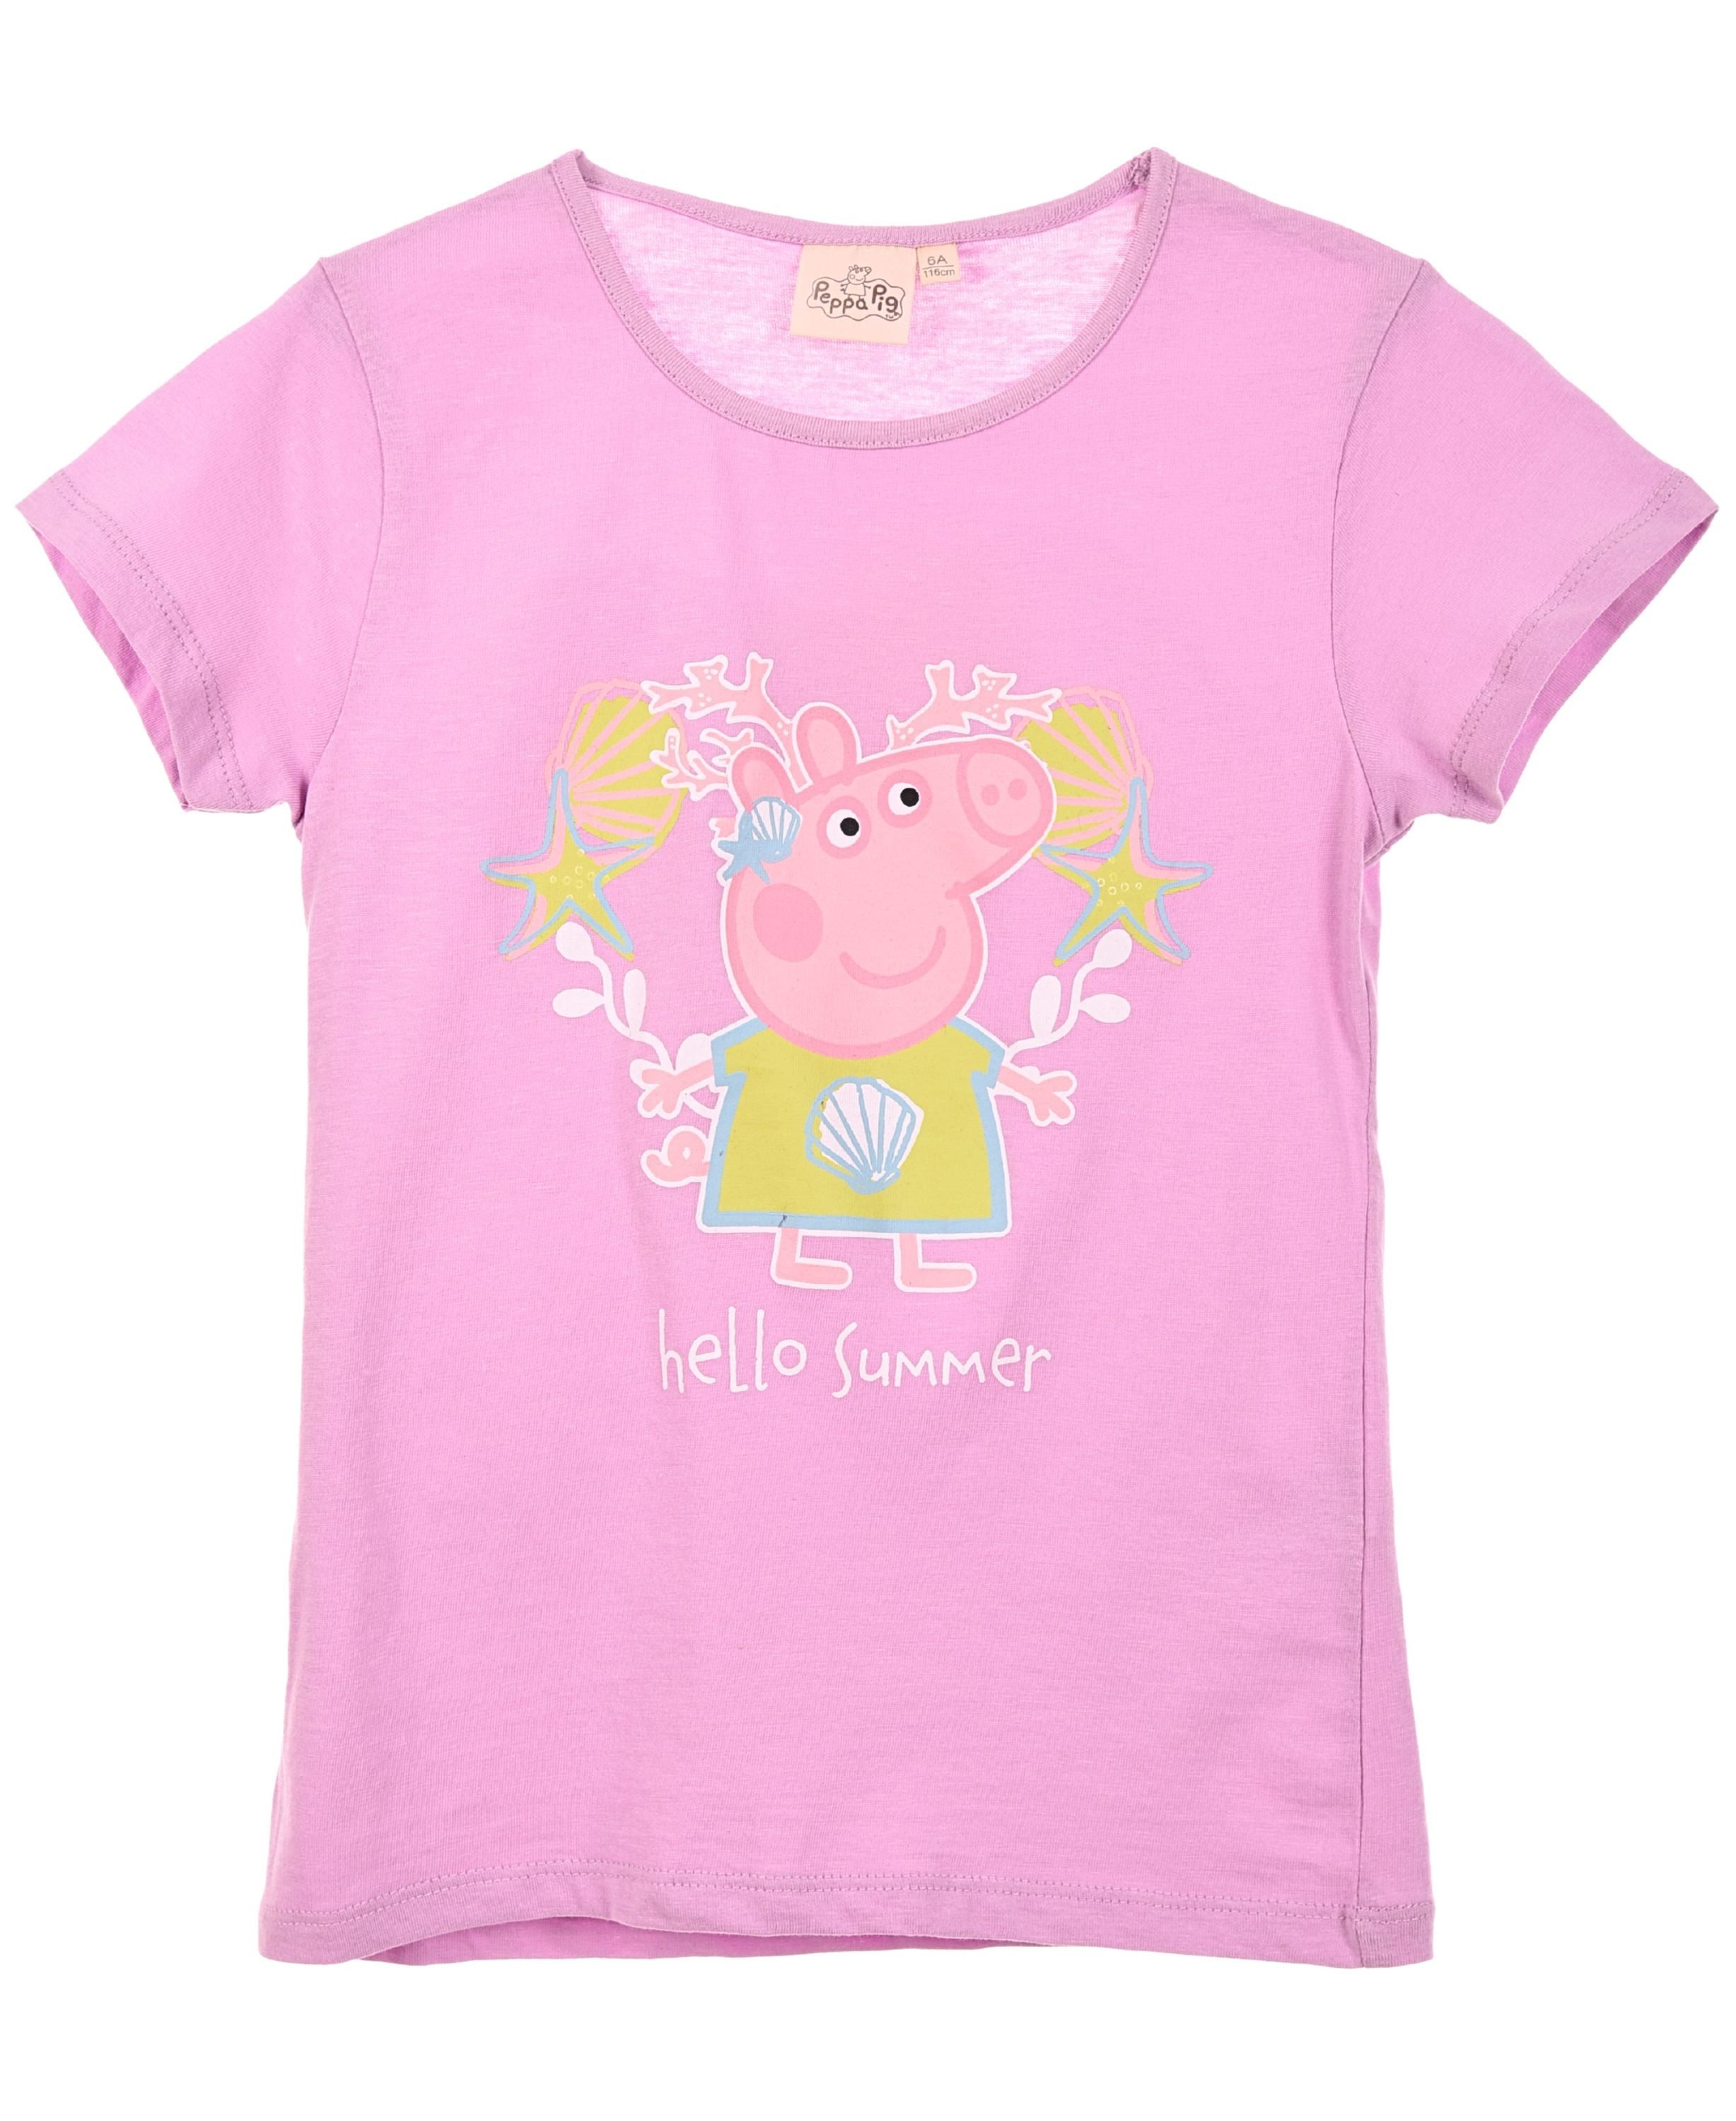 Peppa Pig T-Shirt Peppa Wutz Hello Summer Mädchen Kurzarmshirt Gr. 98 - 116 cm